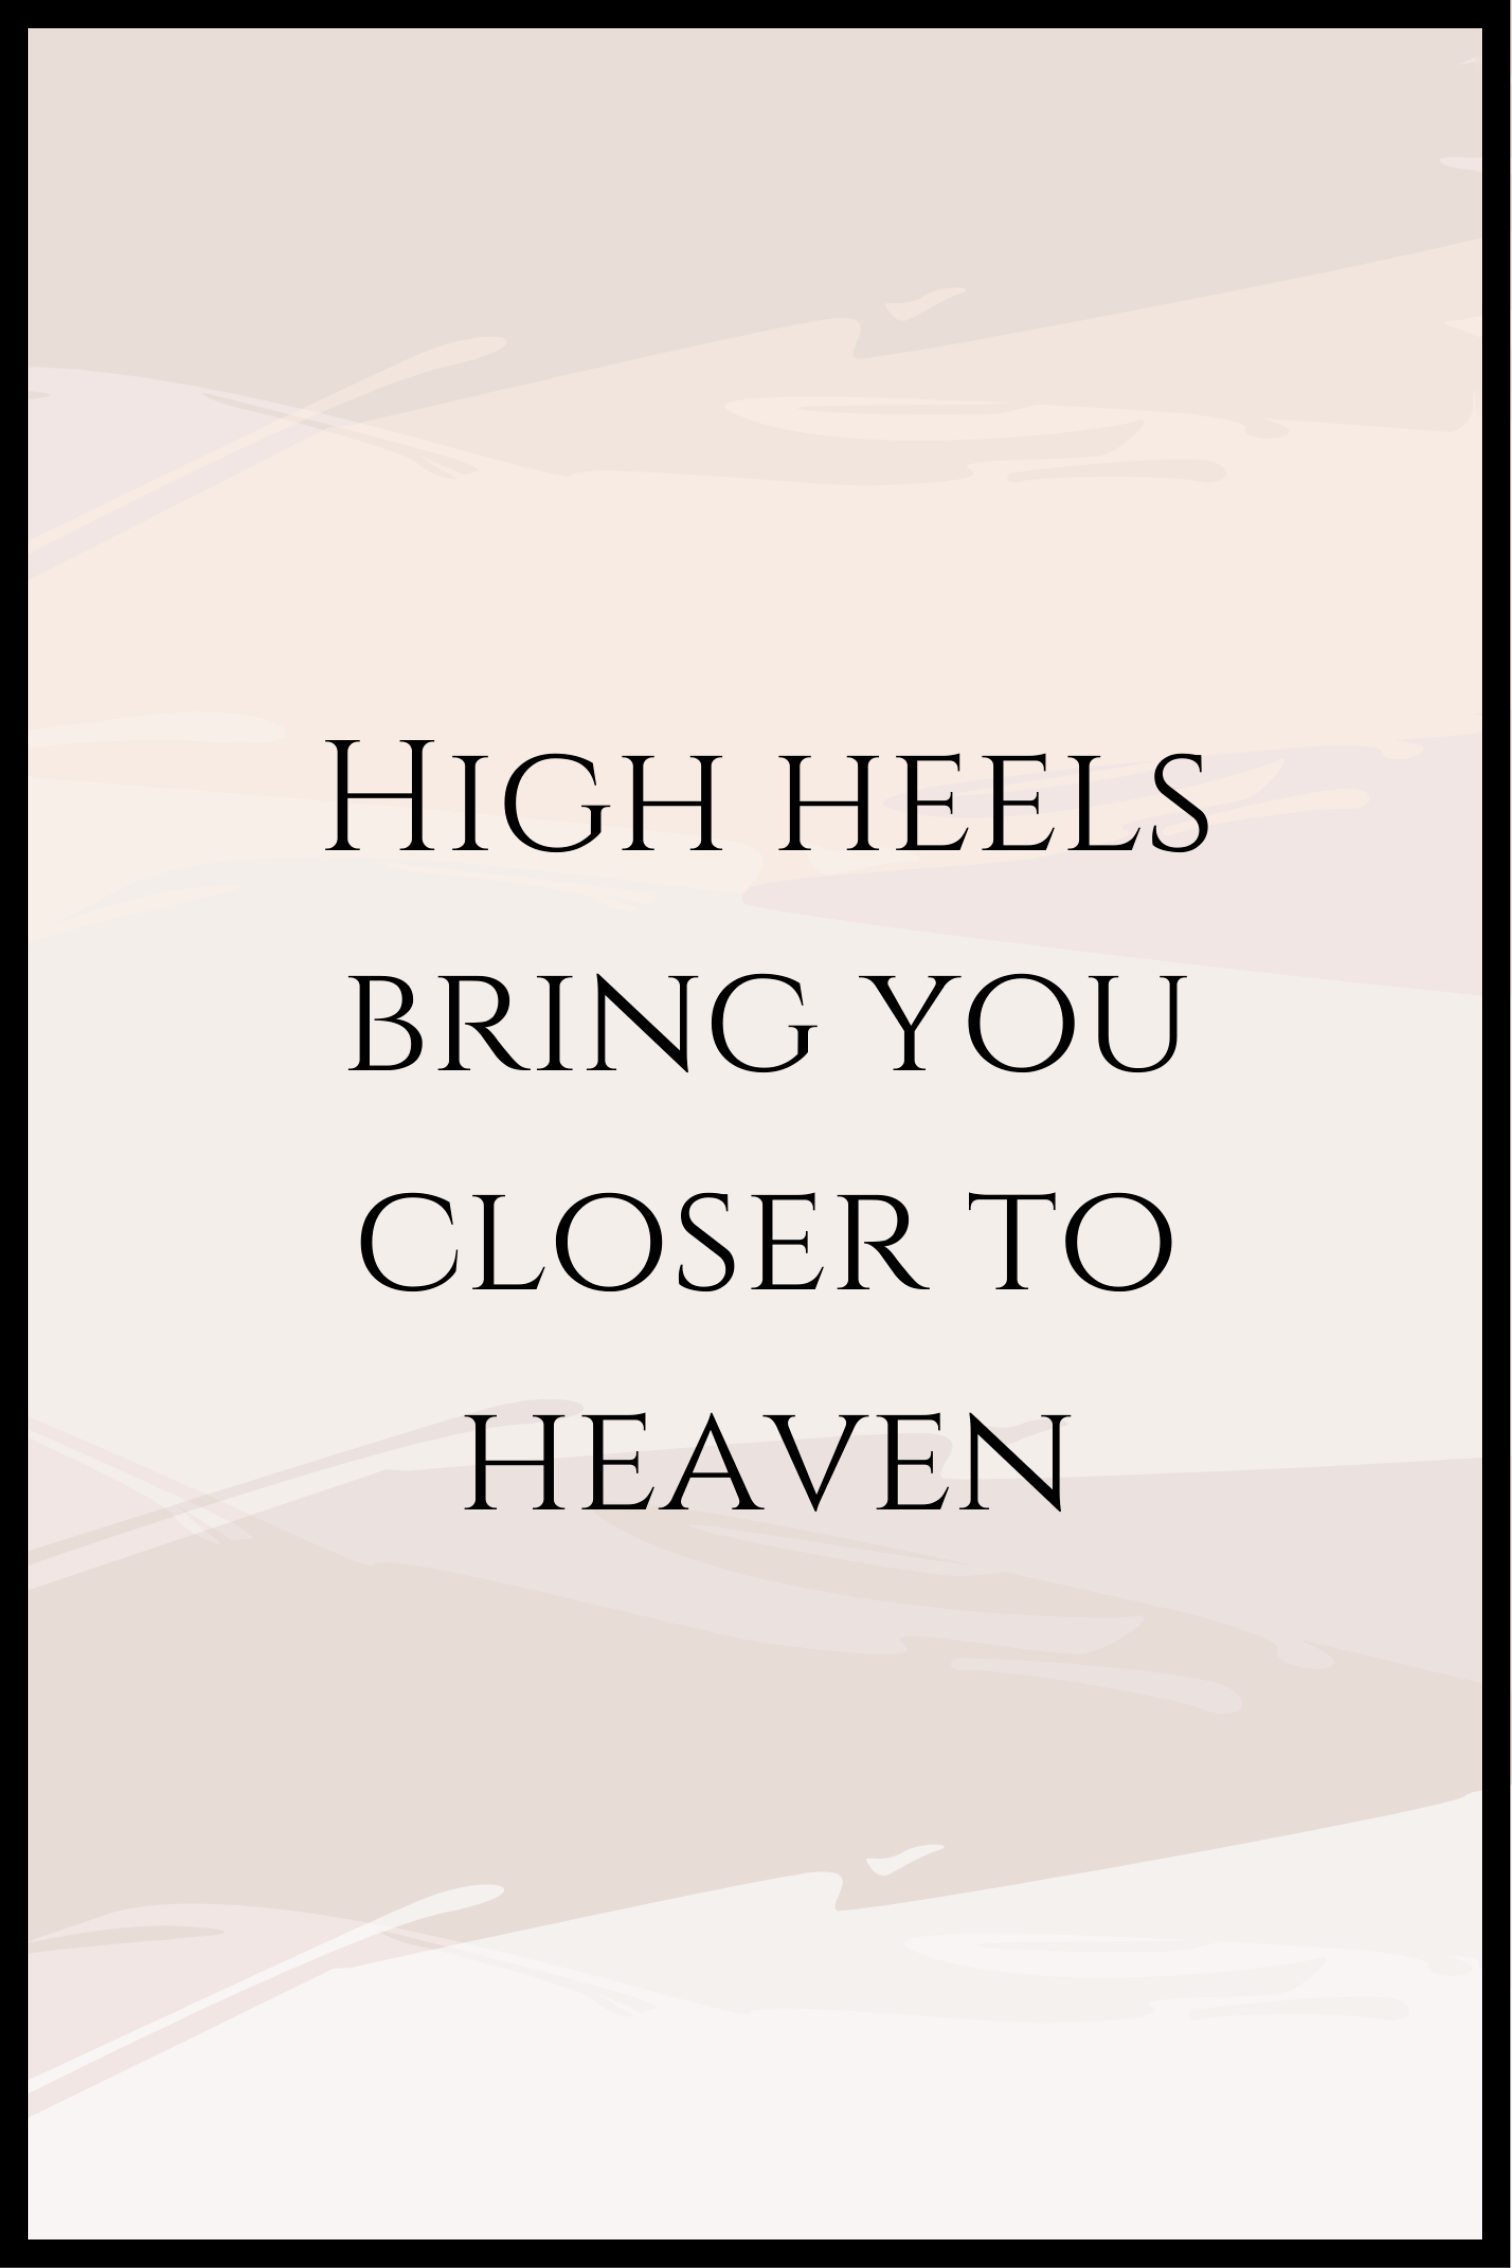 High heels plakat